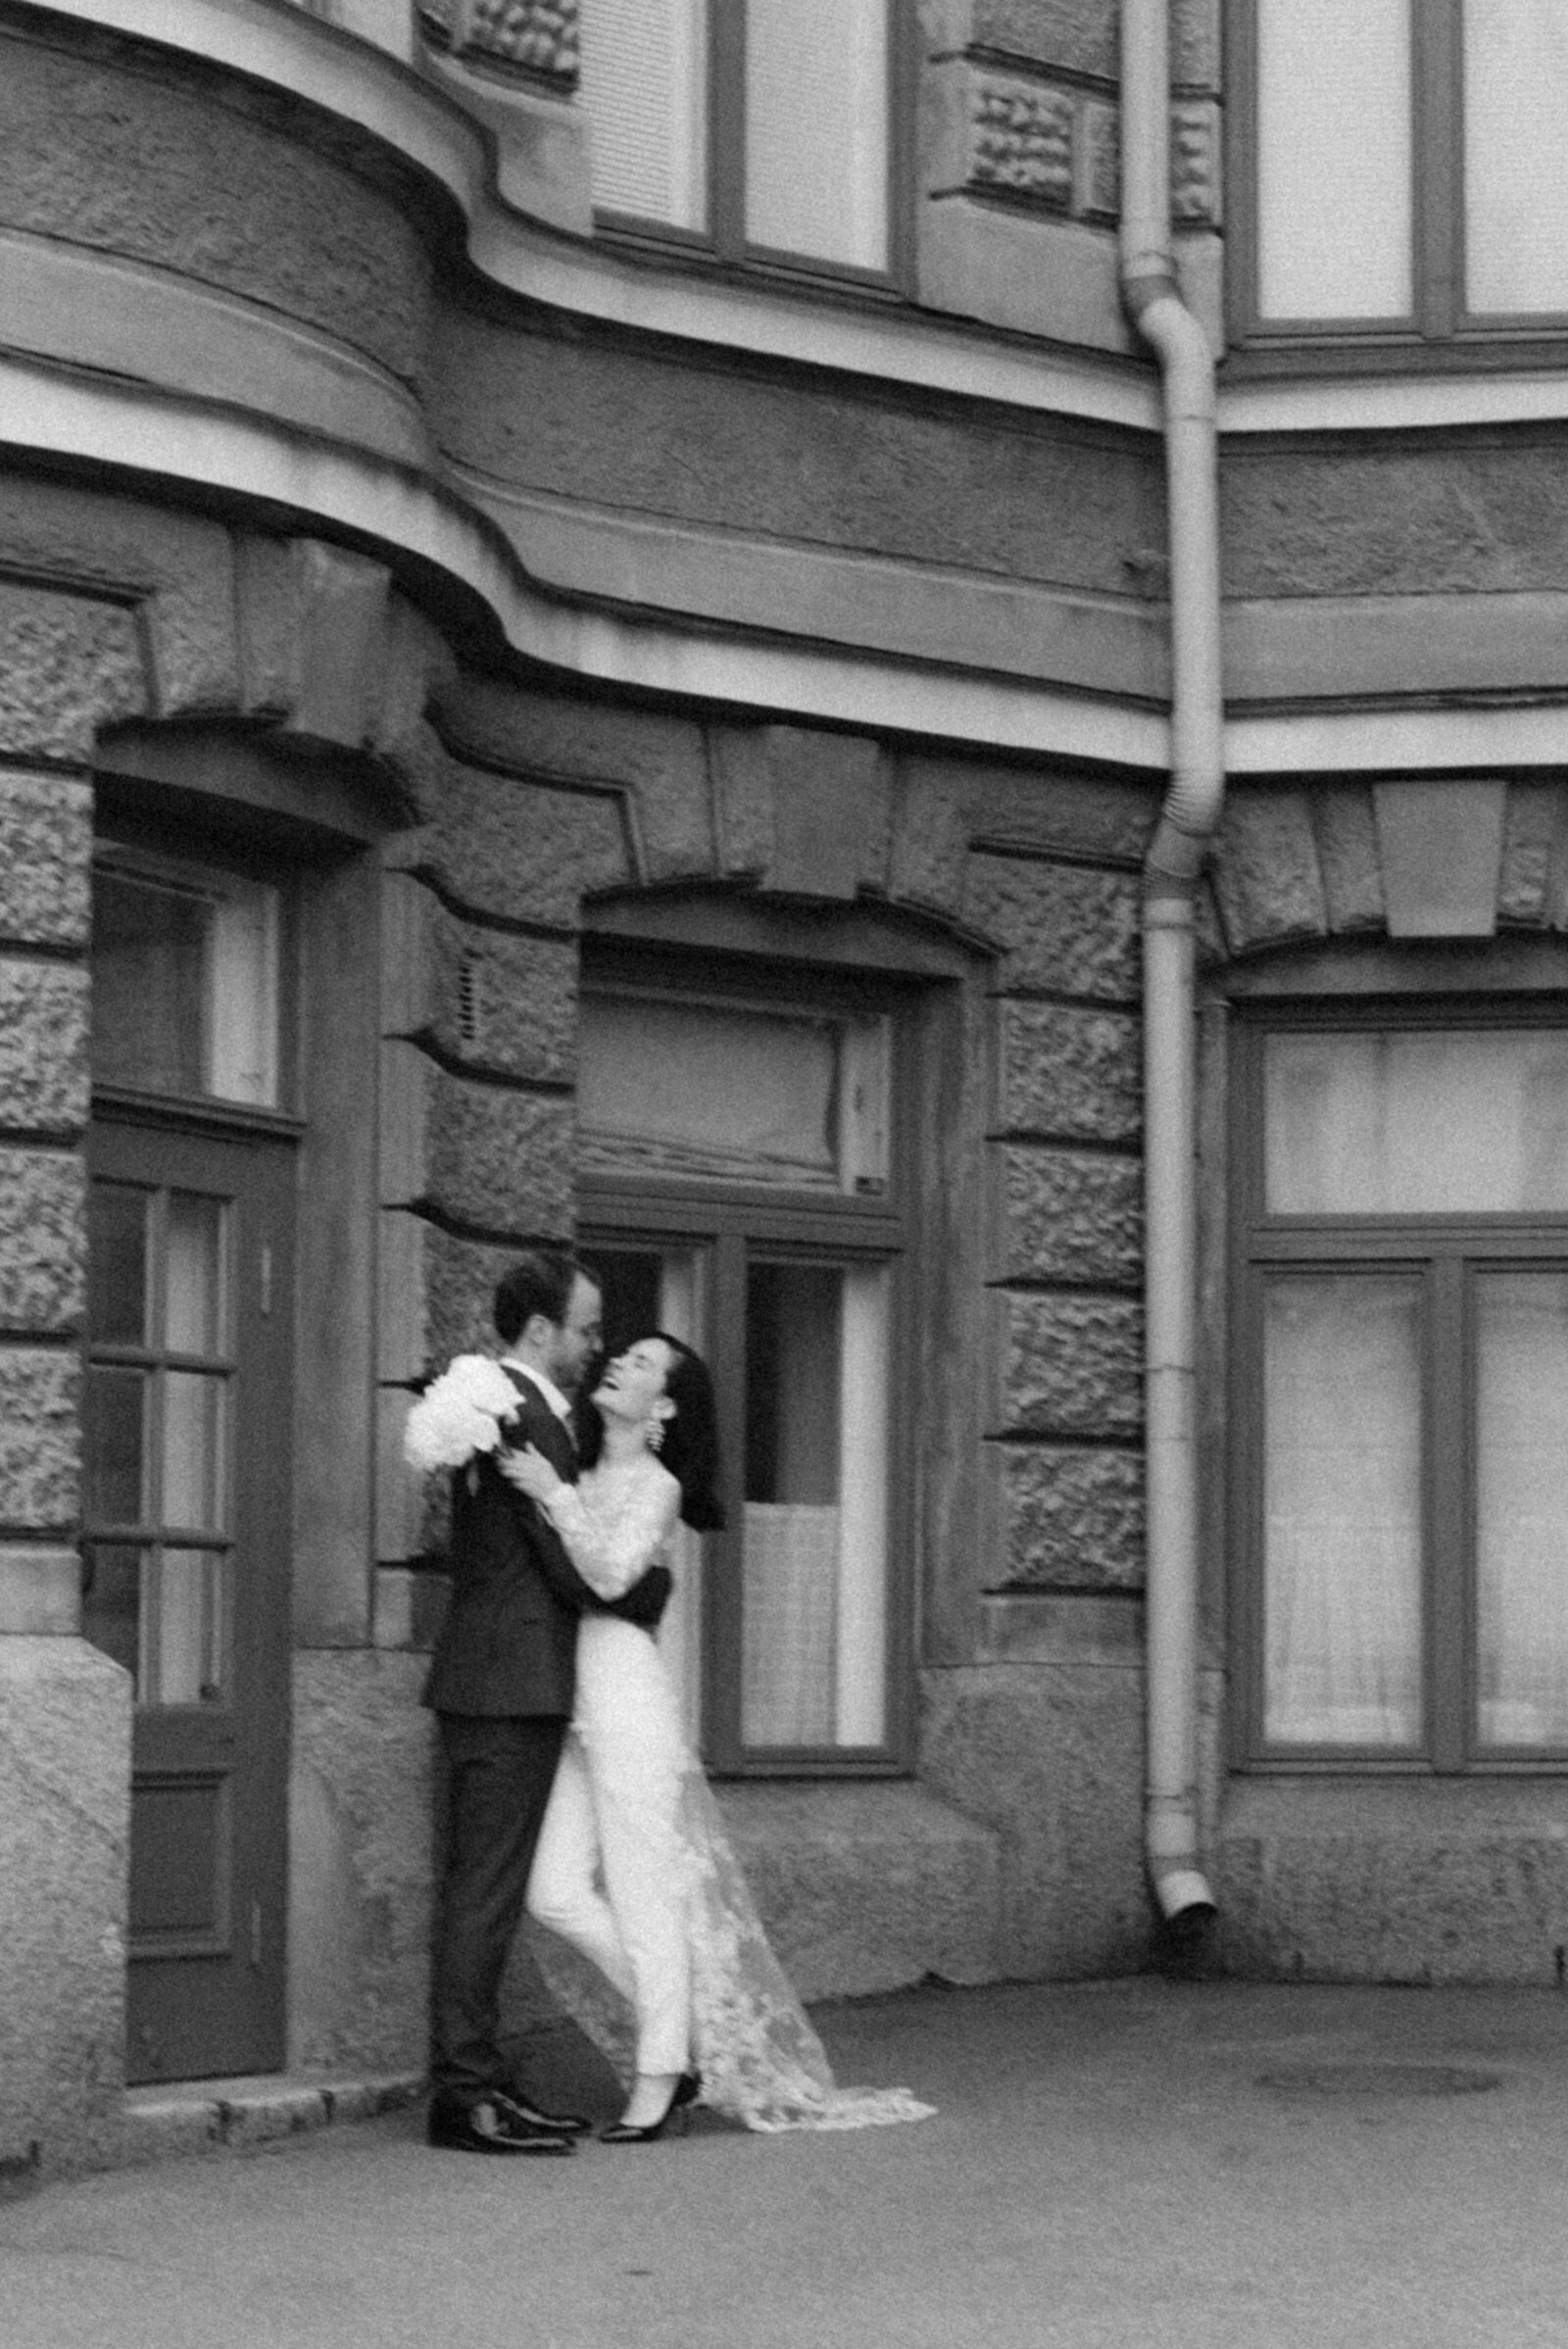 Hääpari seisoo ja nauraa rakennuksen edessä. Morsiamella on tyylikäs häähaalari. hääkuvaaja Hannika Gabrielssonin ikuistama kuva.